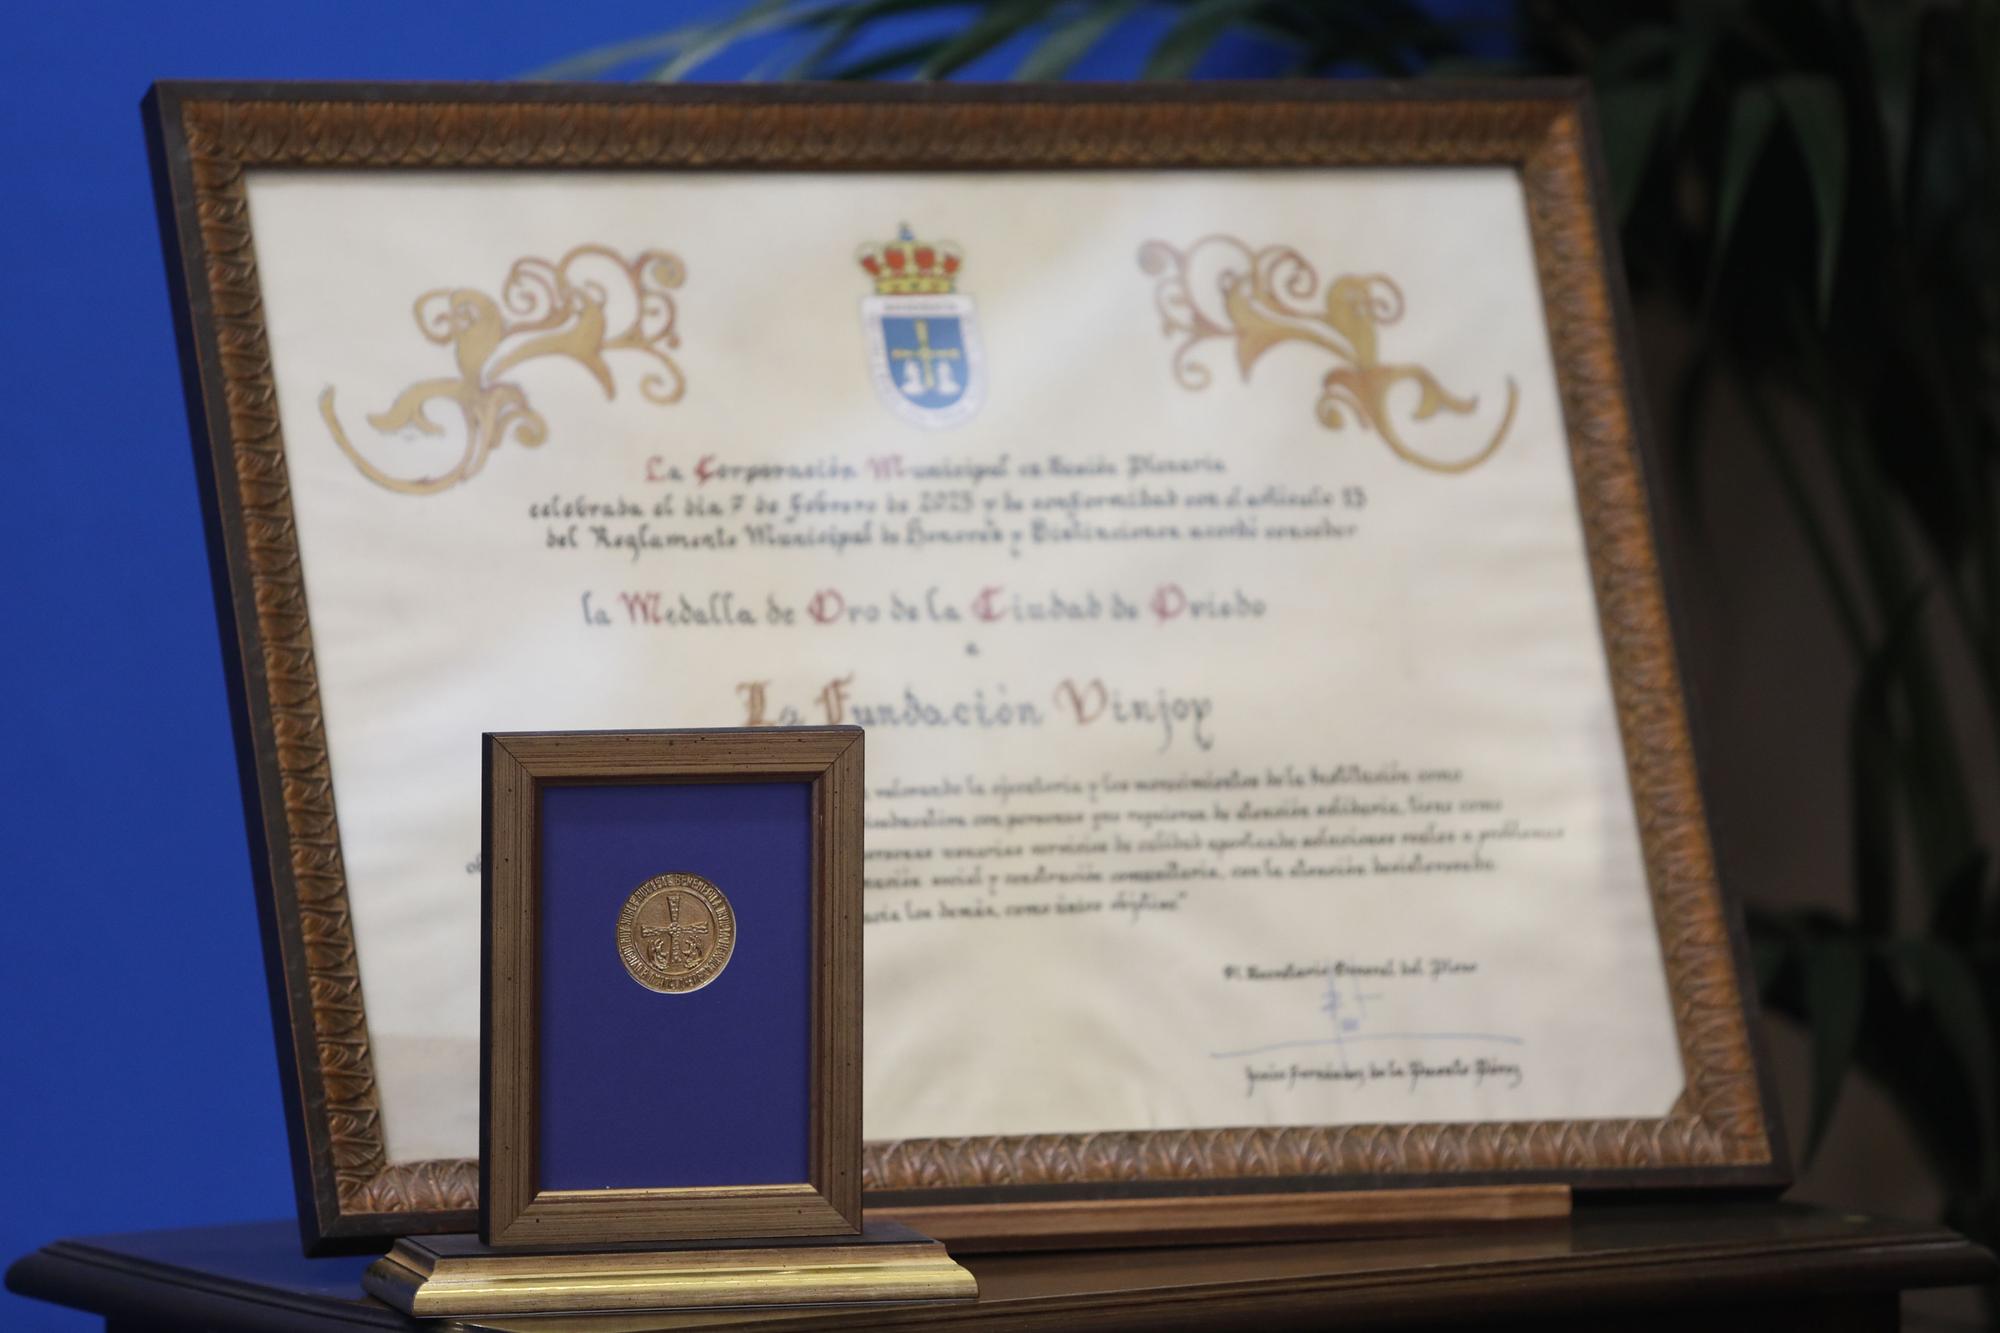 La Fundación Vinjoy, Medalla de Oro de Oviedo por su "compromiso, dignidad y justicia"